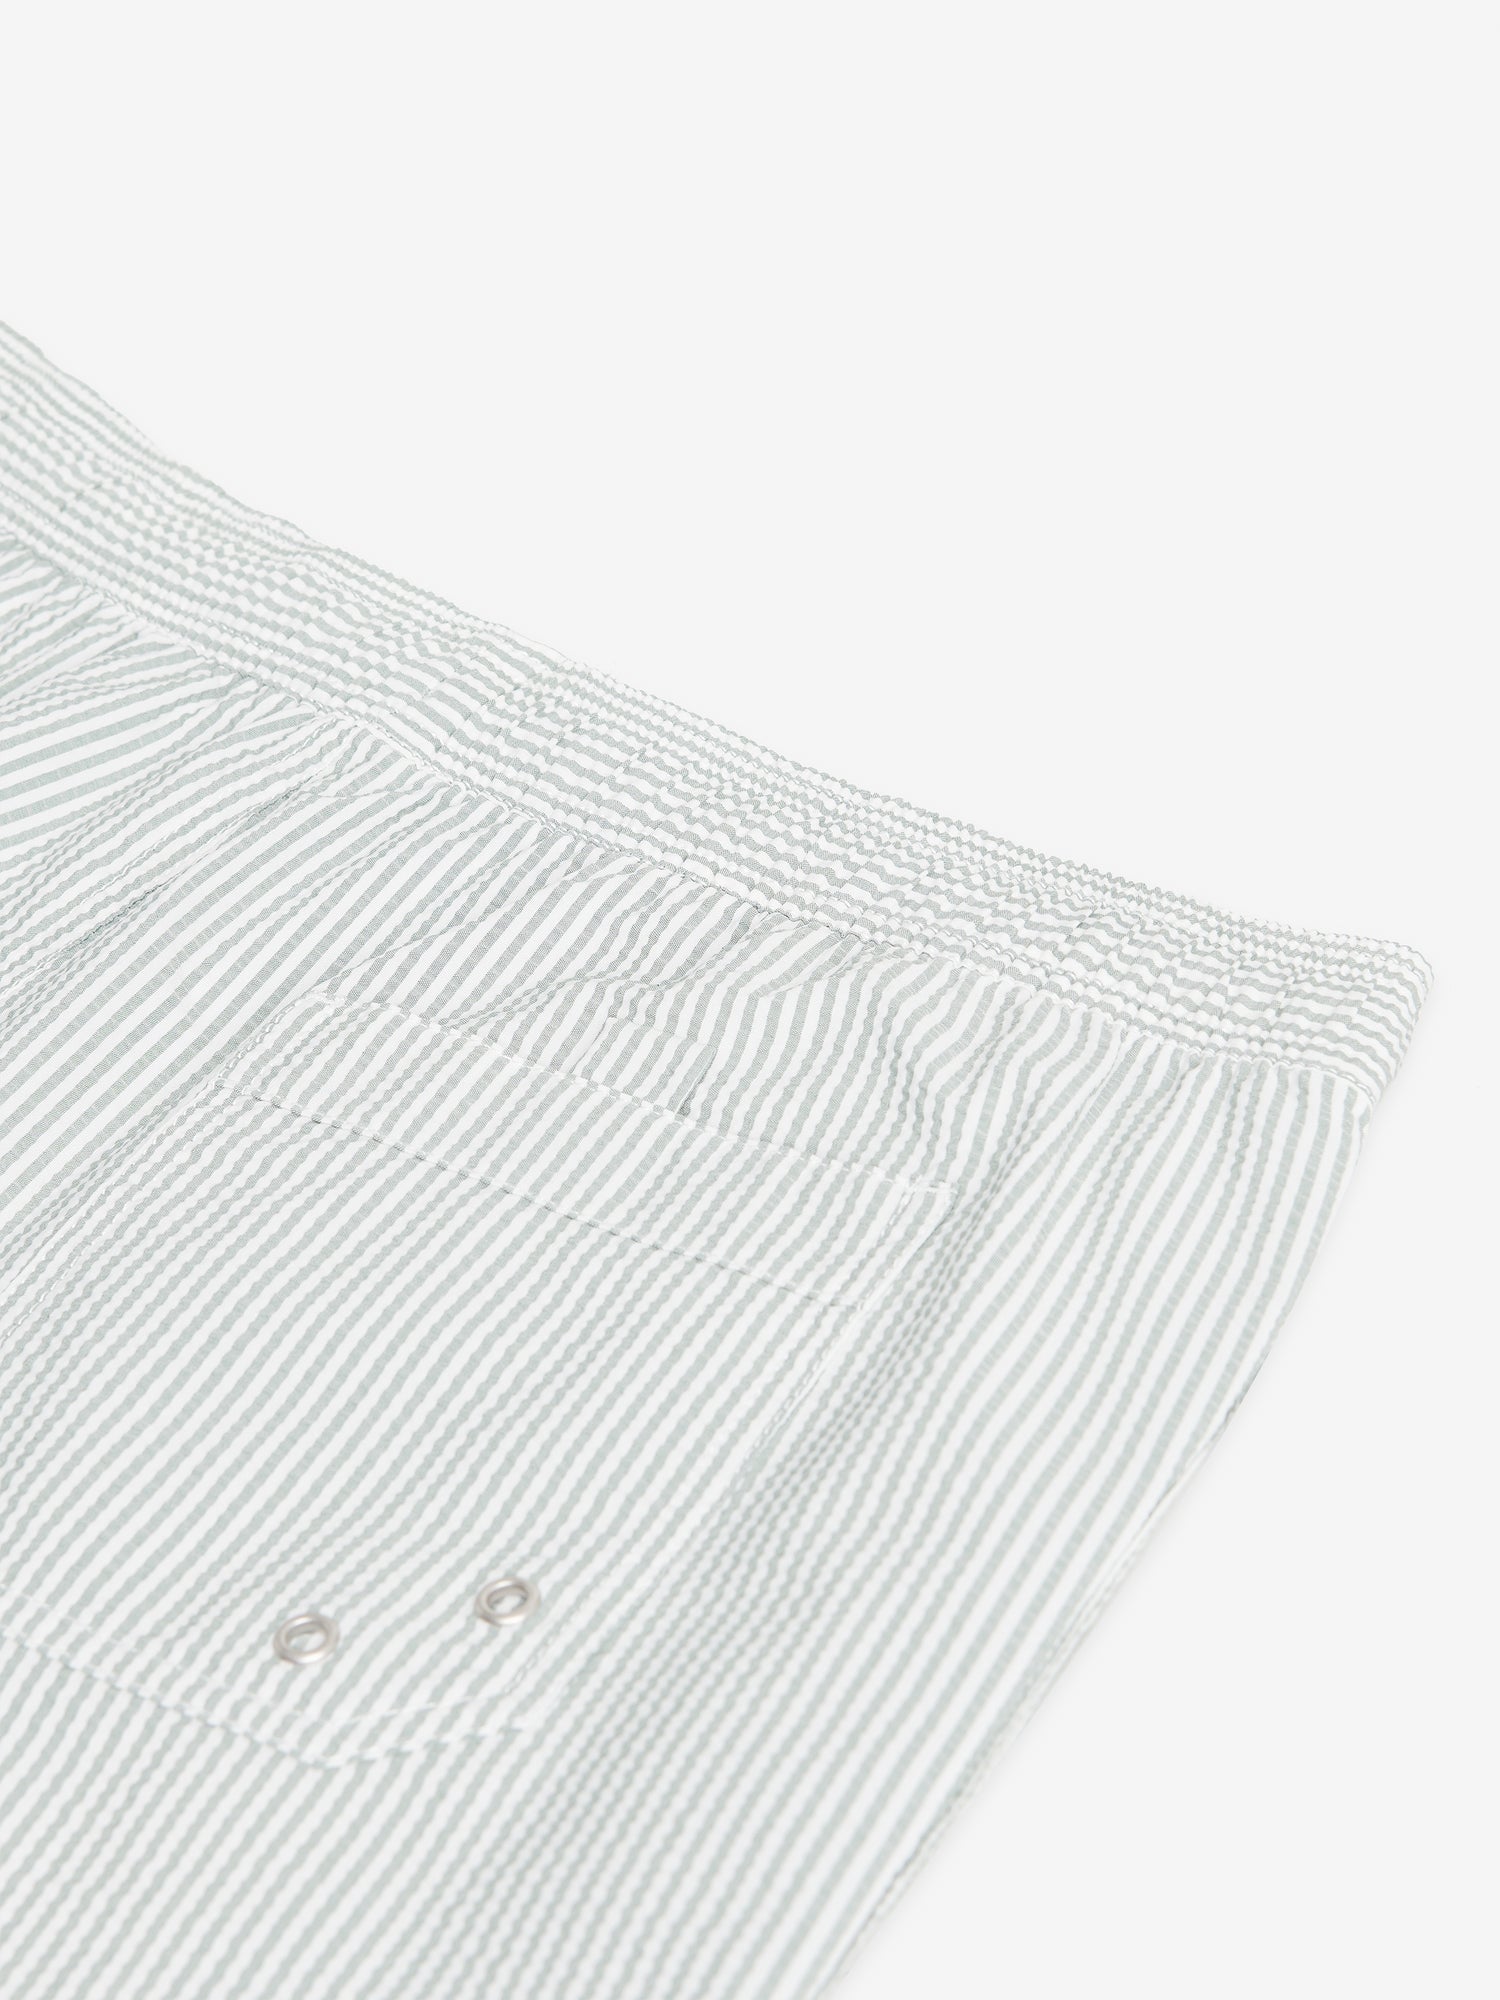 Venice Seersucker Cotton-Polyester SW10024-SAG